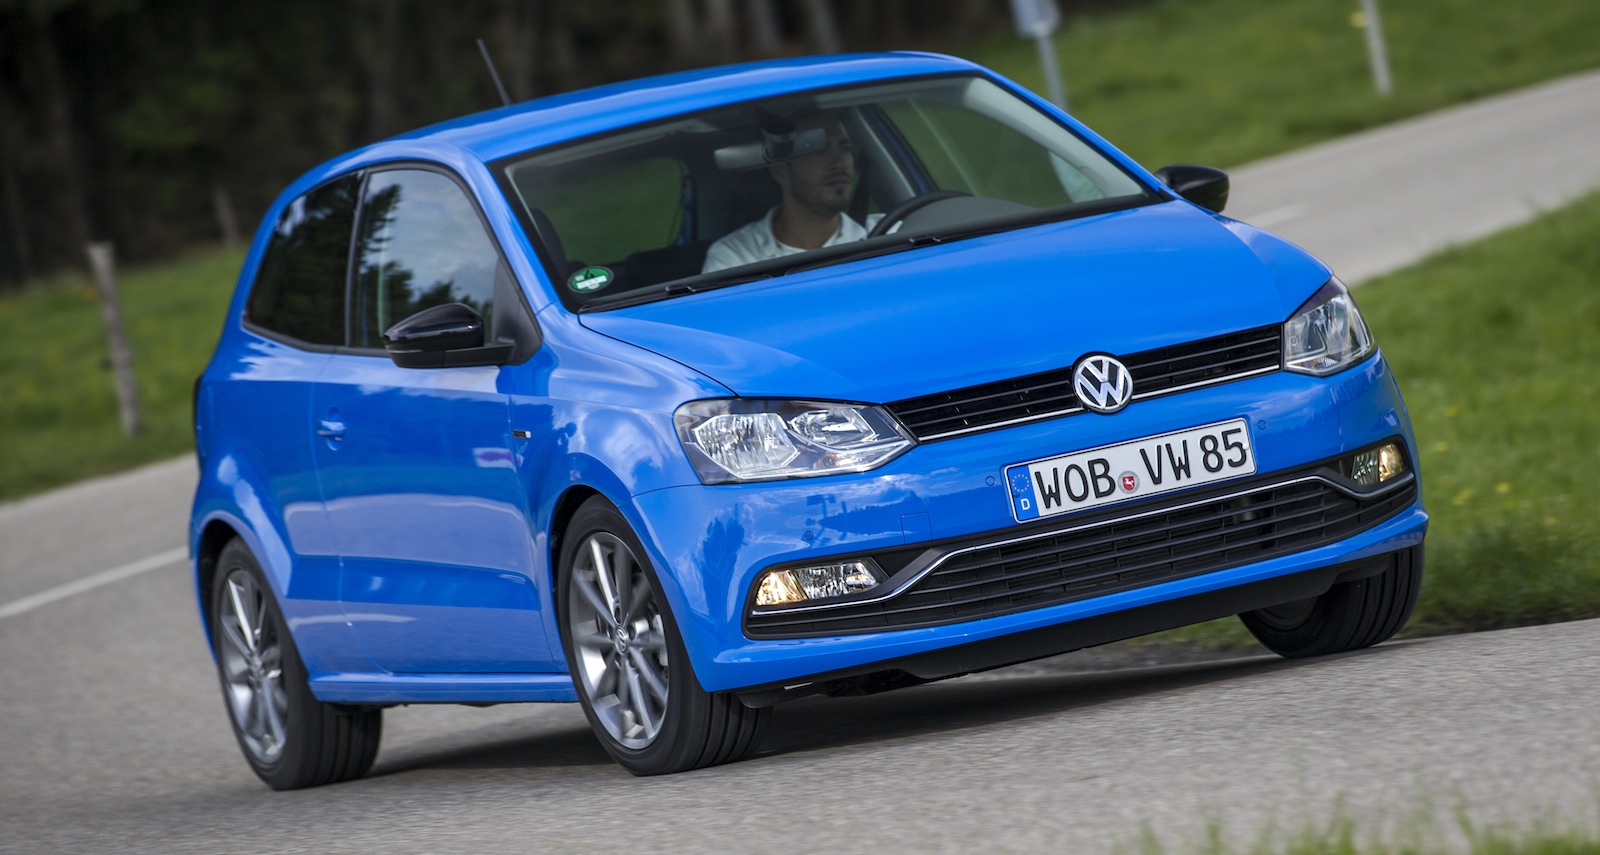 2014 Volkswagen Polo Review - photos | CarAdvice